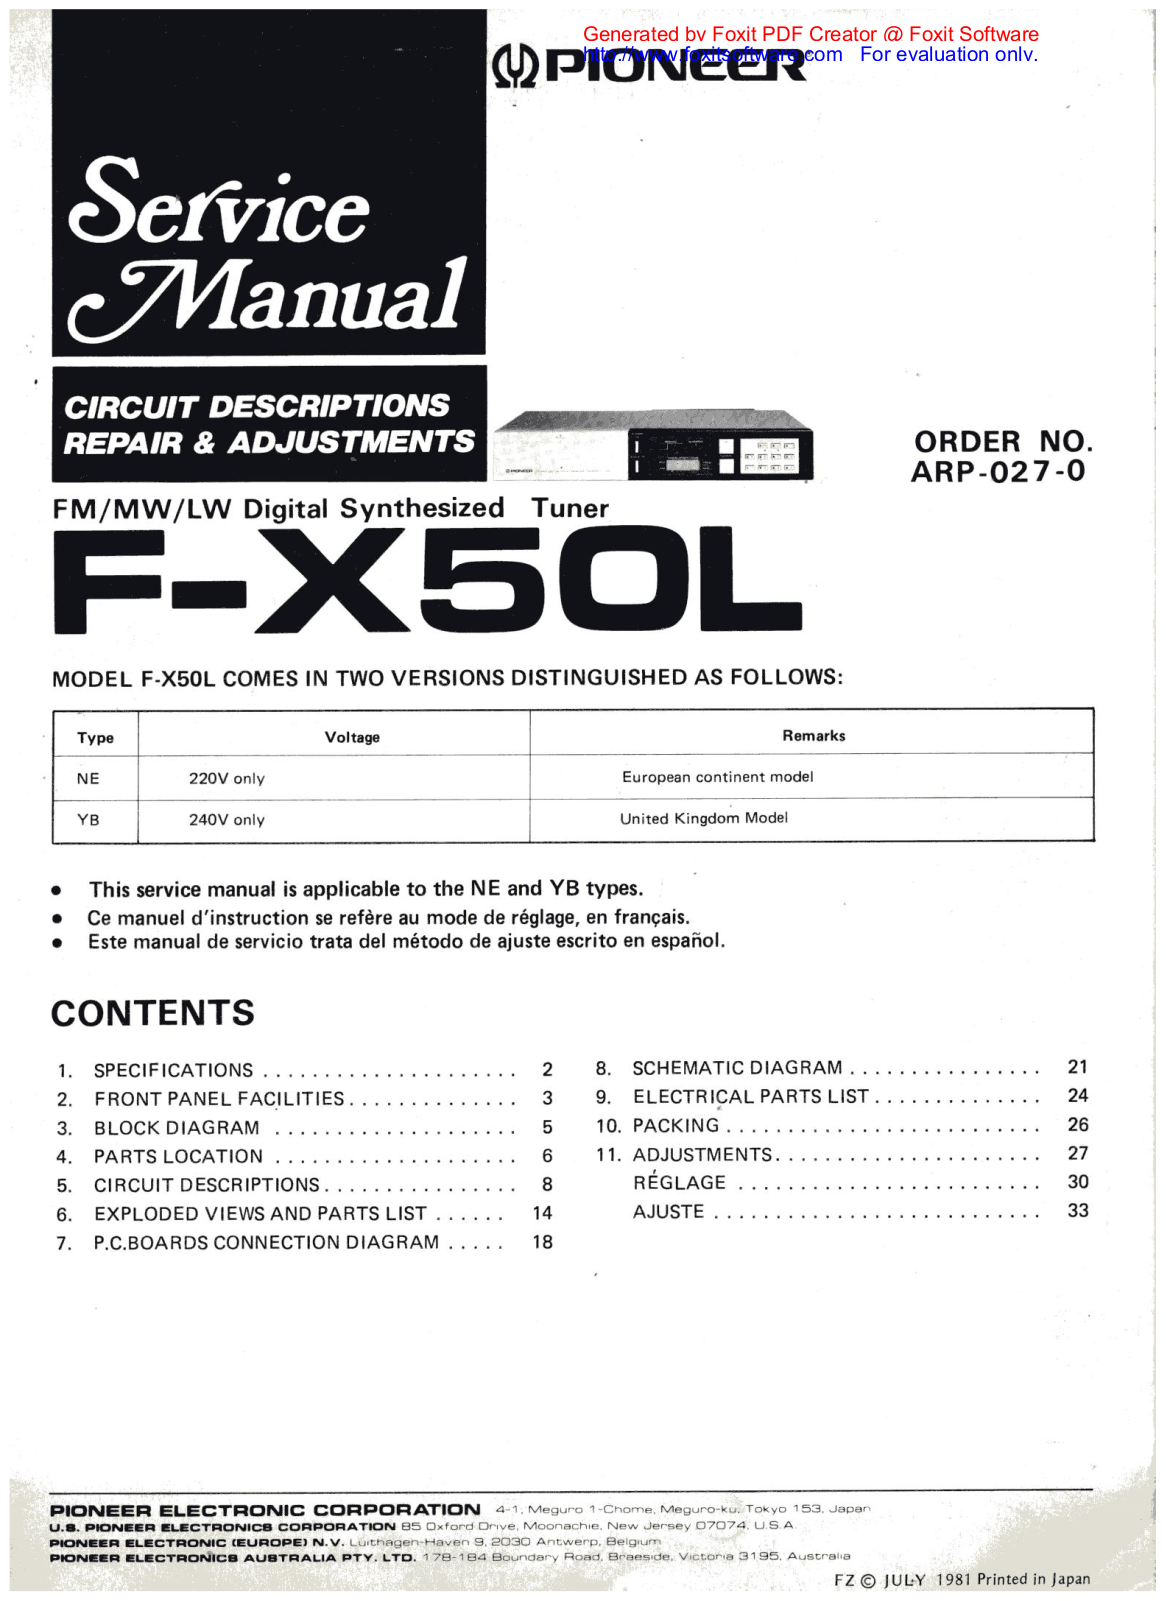 PIONEER f x50l Service Manual